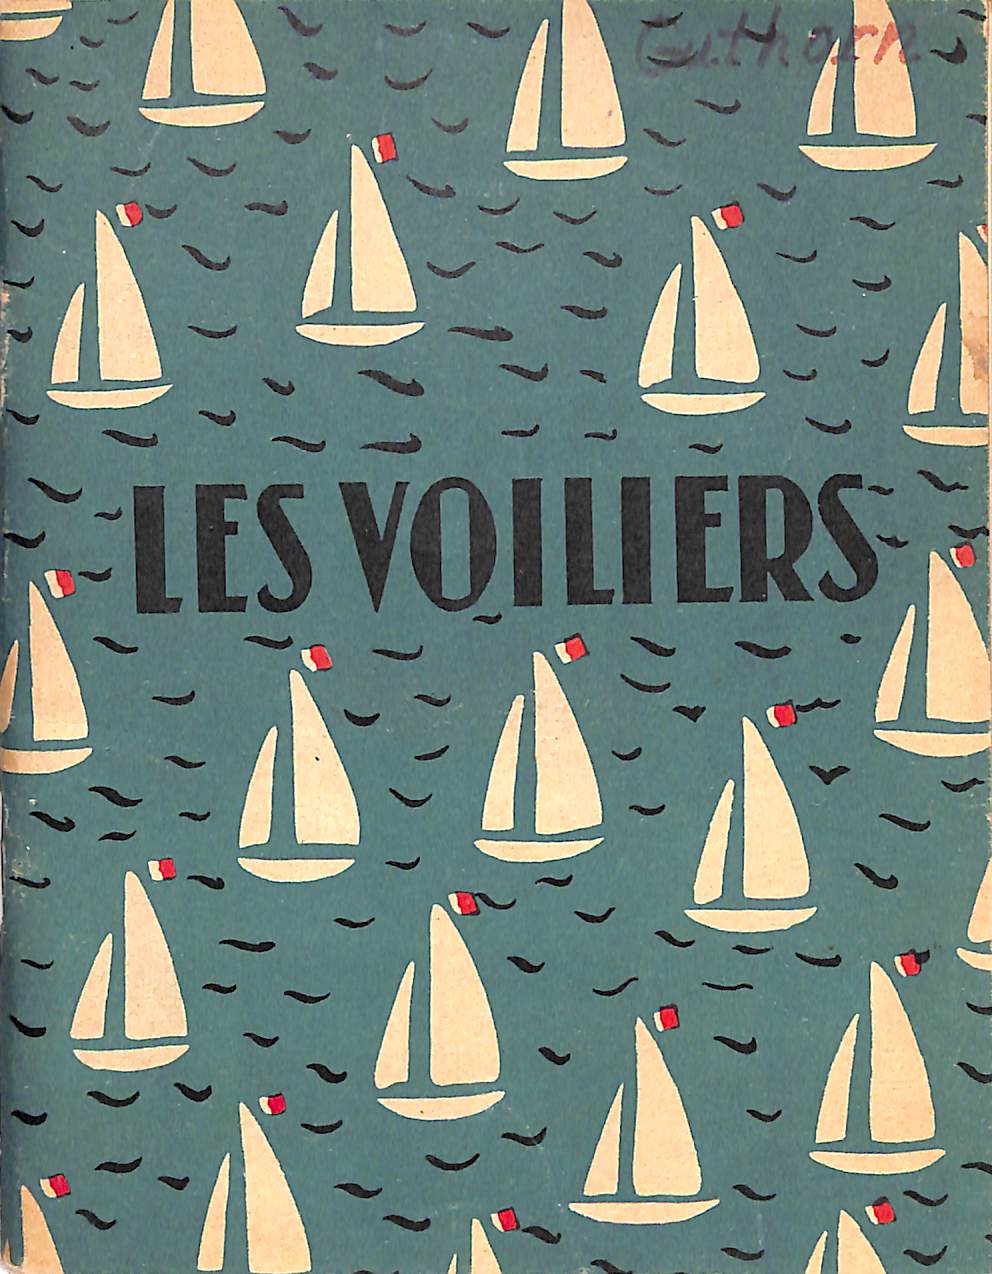 "Les Voiliers" 1953